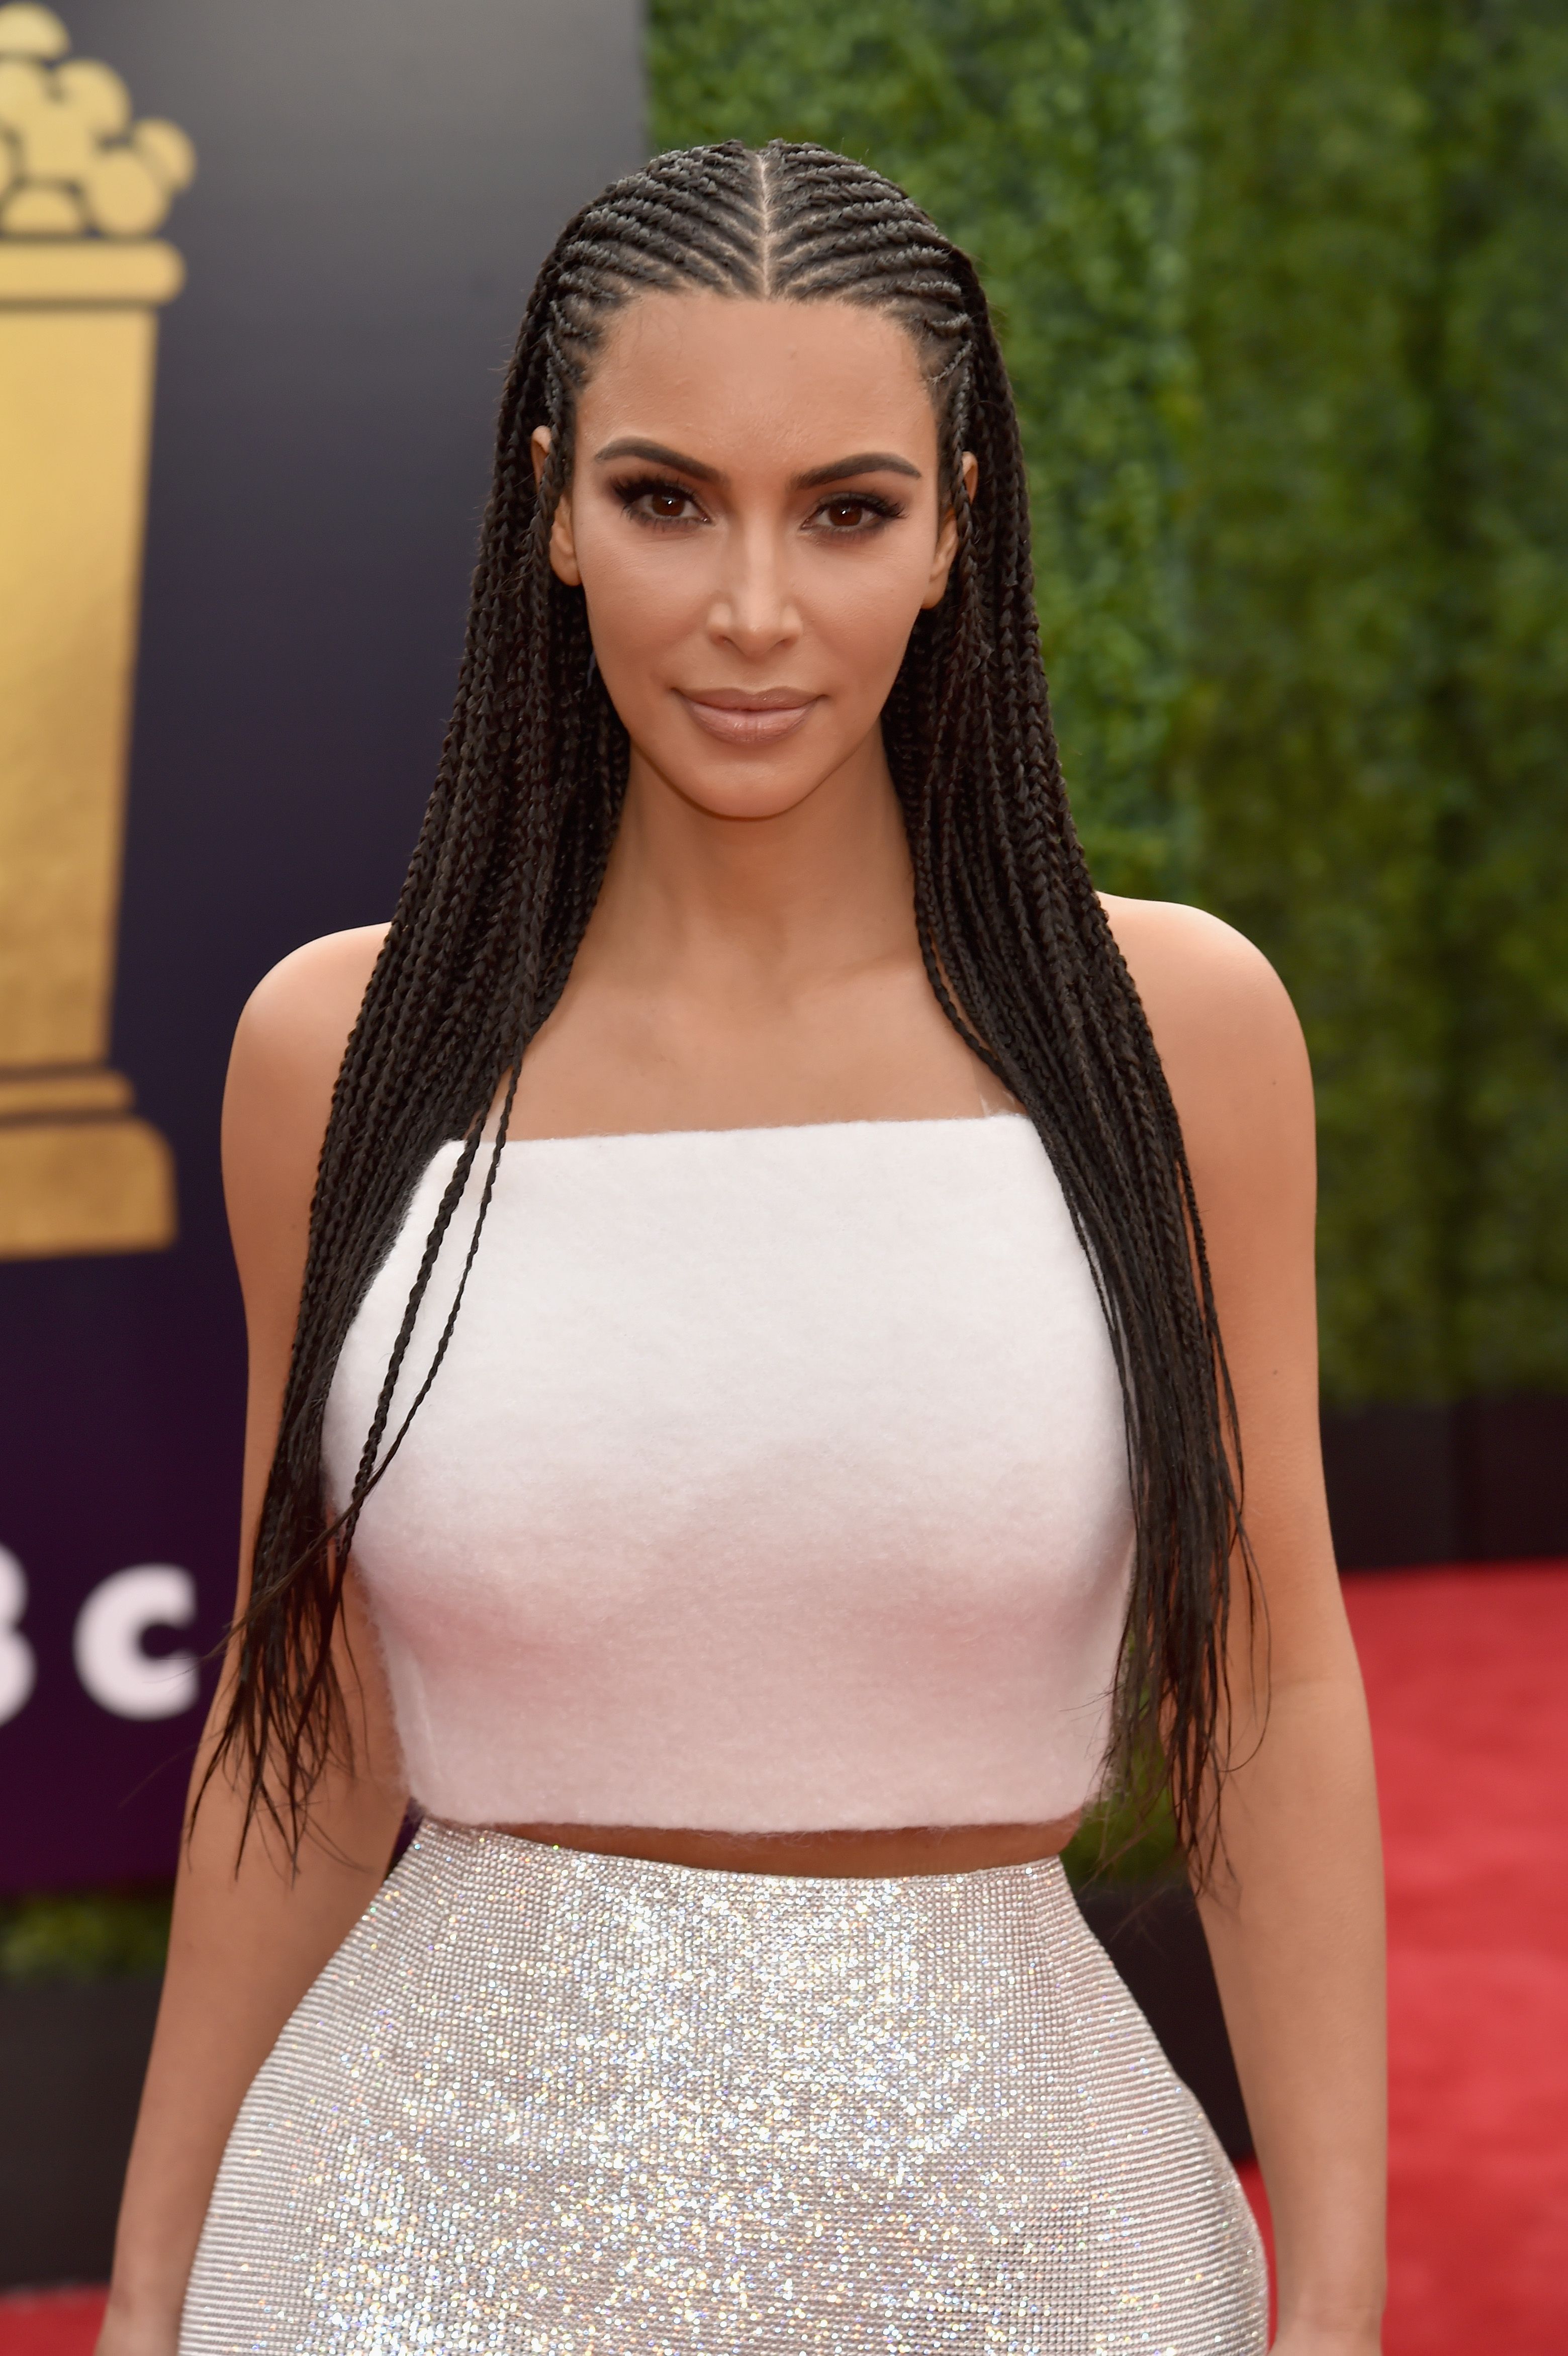 50 Best Kim Kardashian Hair Looks - Kim Kardashian's Evolving Hairstyles